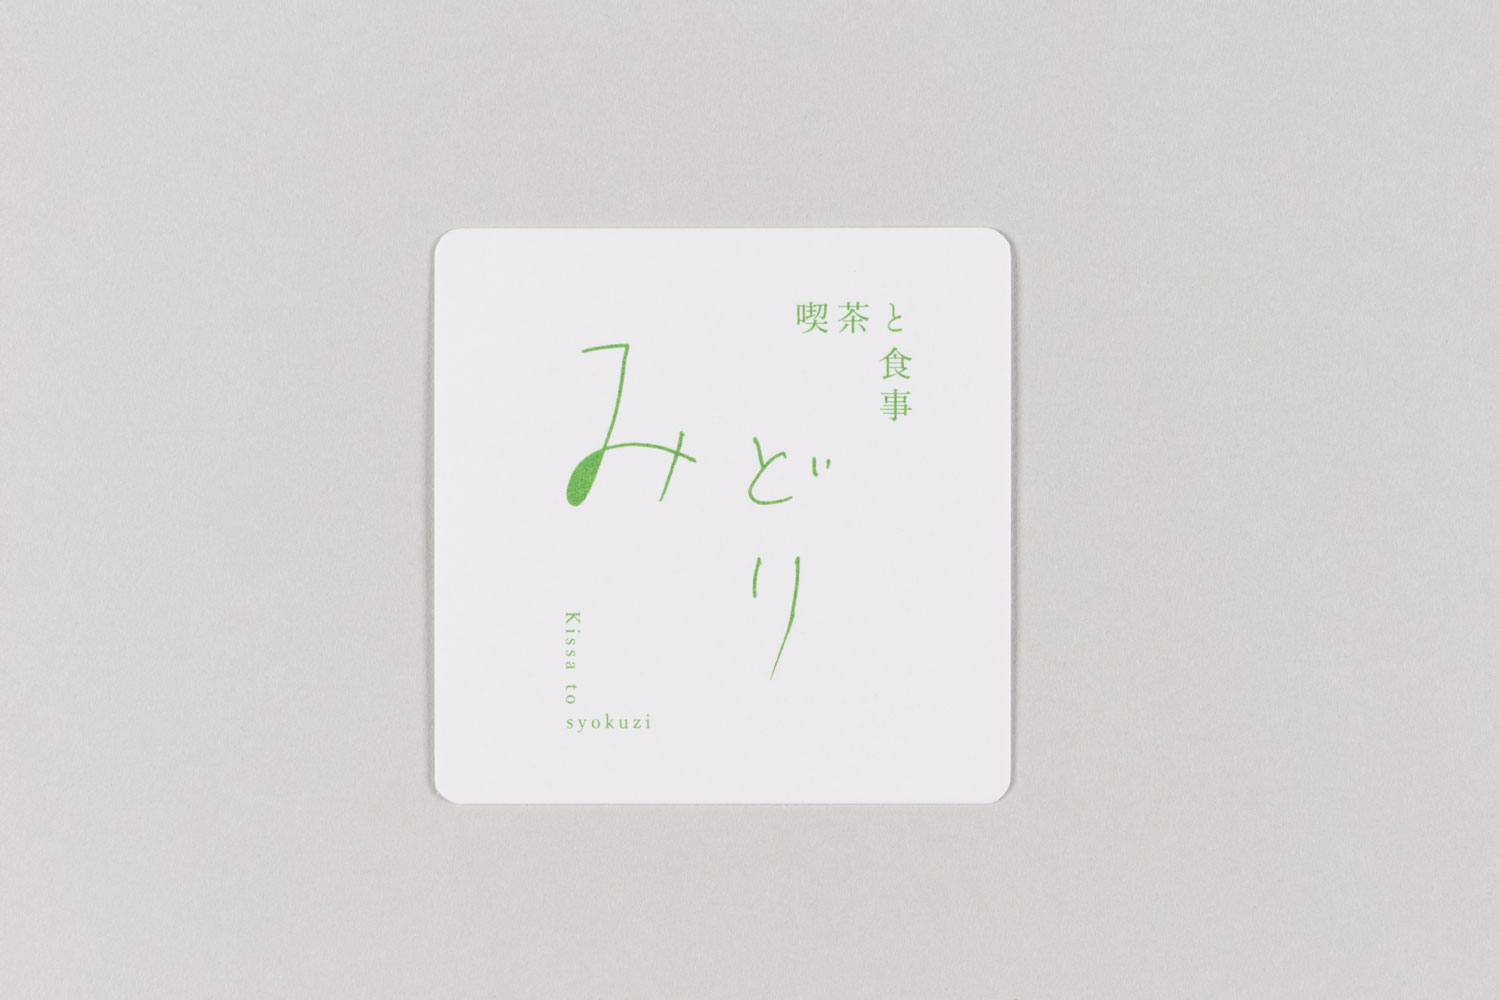 ichinokura watashino-oto Logomark